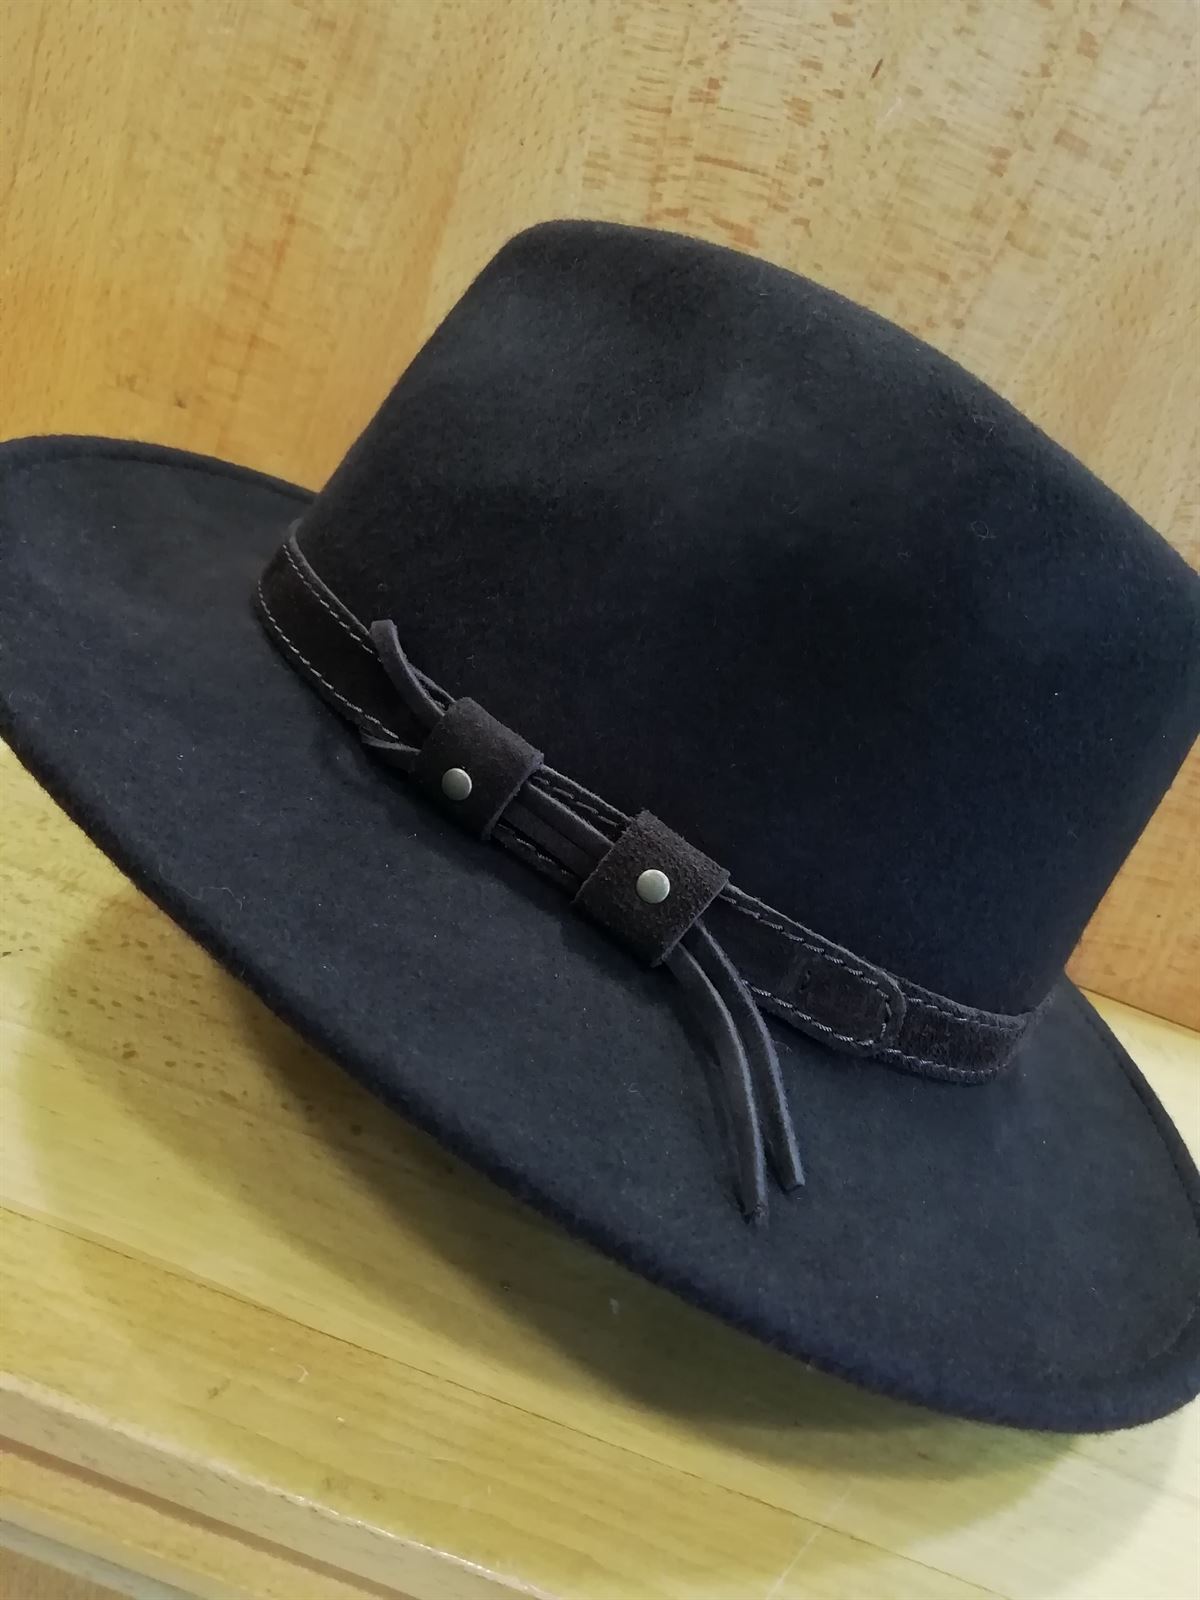 Sombrero BEIRETS de lana impermeable color marrón oscuro - Imagen 2